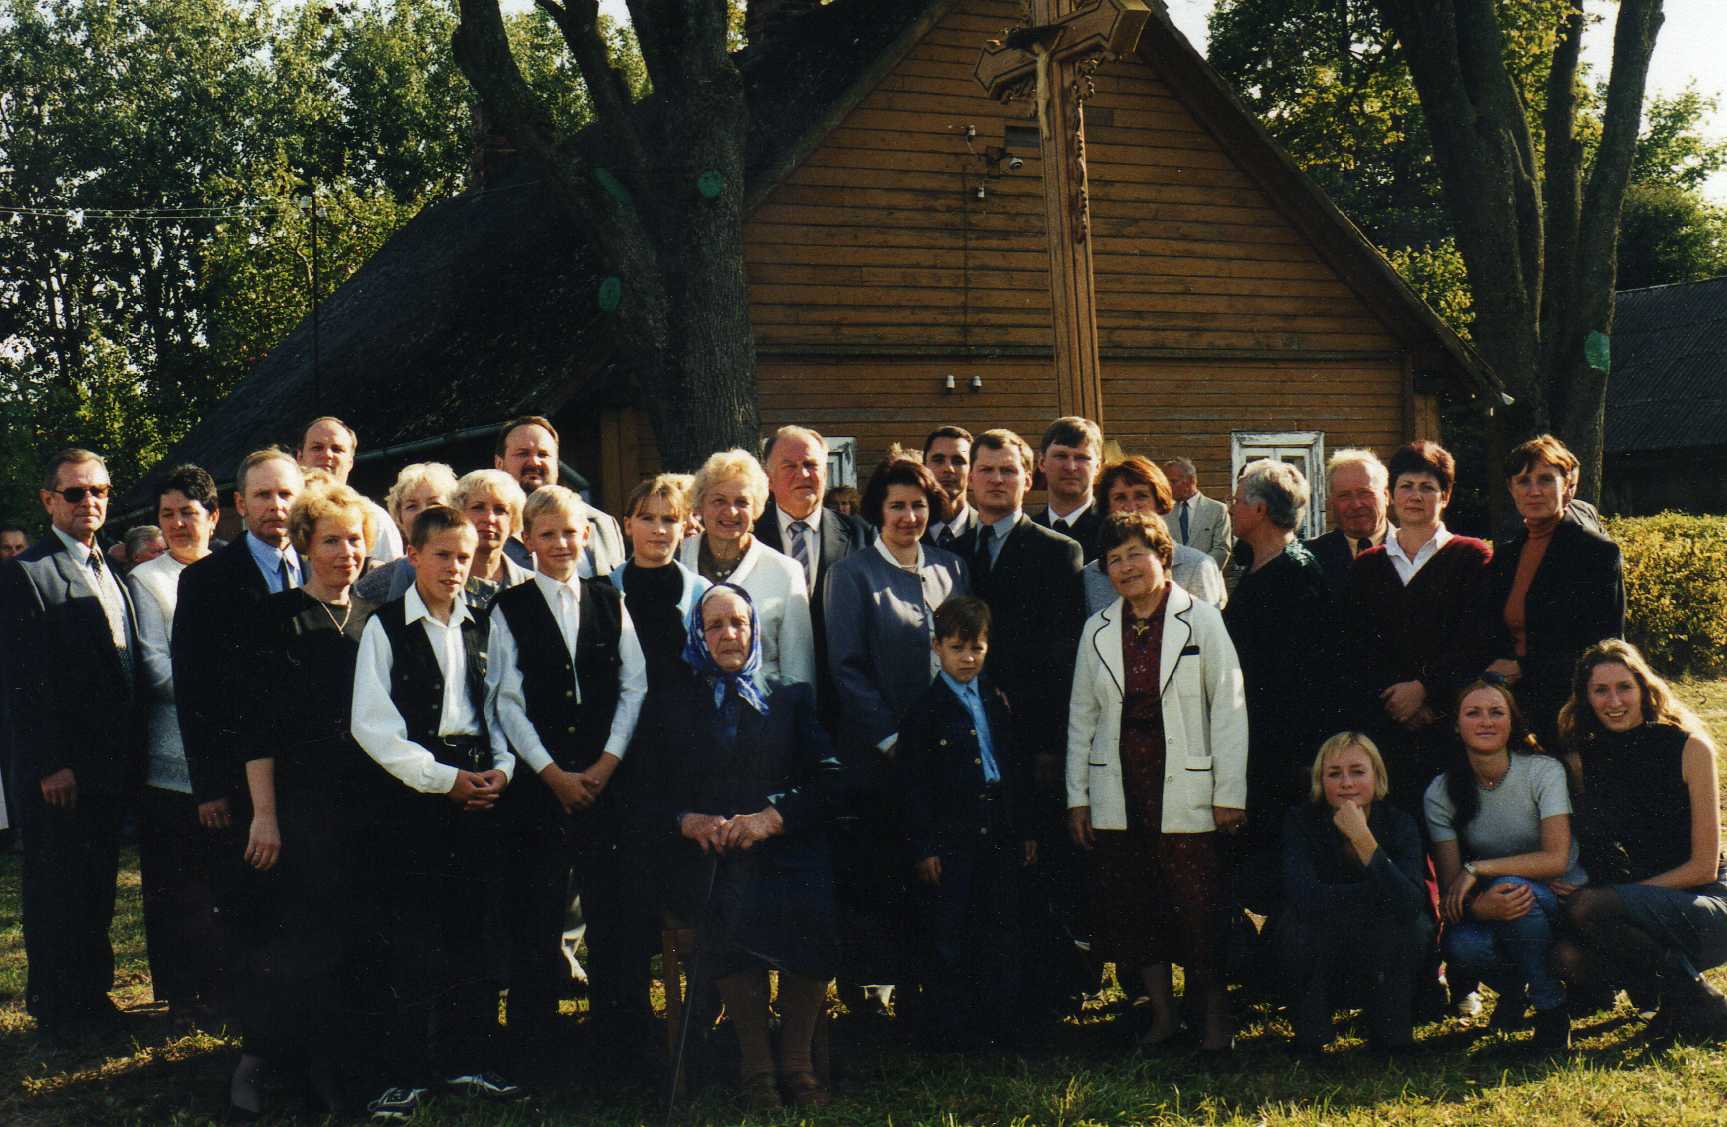  Vasinauskų giminė prie senelių namų Pasvalio vienkiemyje. 1999 m.